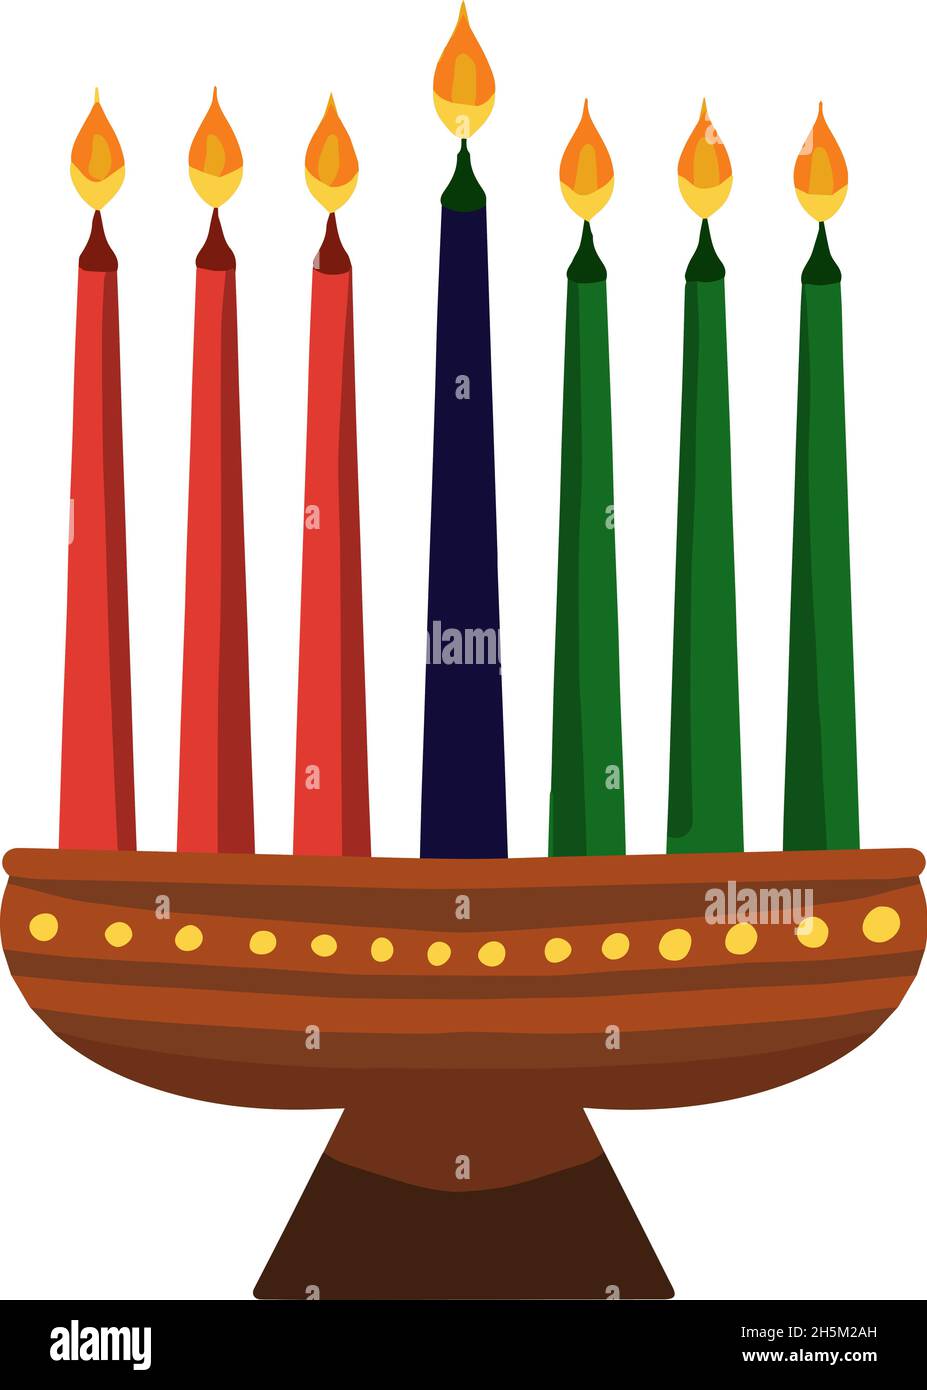 Kwanzaa Kinara and seven candles called mishumaa saba for Kwanzaa. Vector illustration. Stock Vector